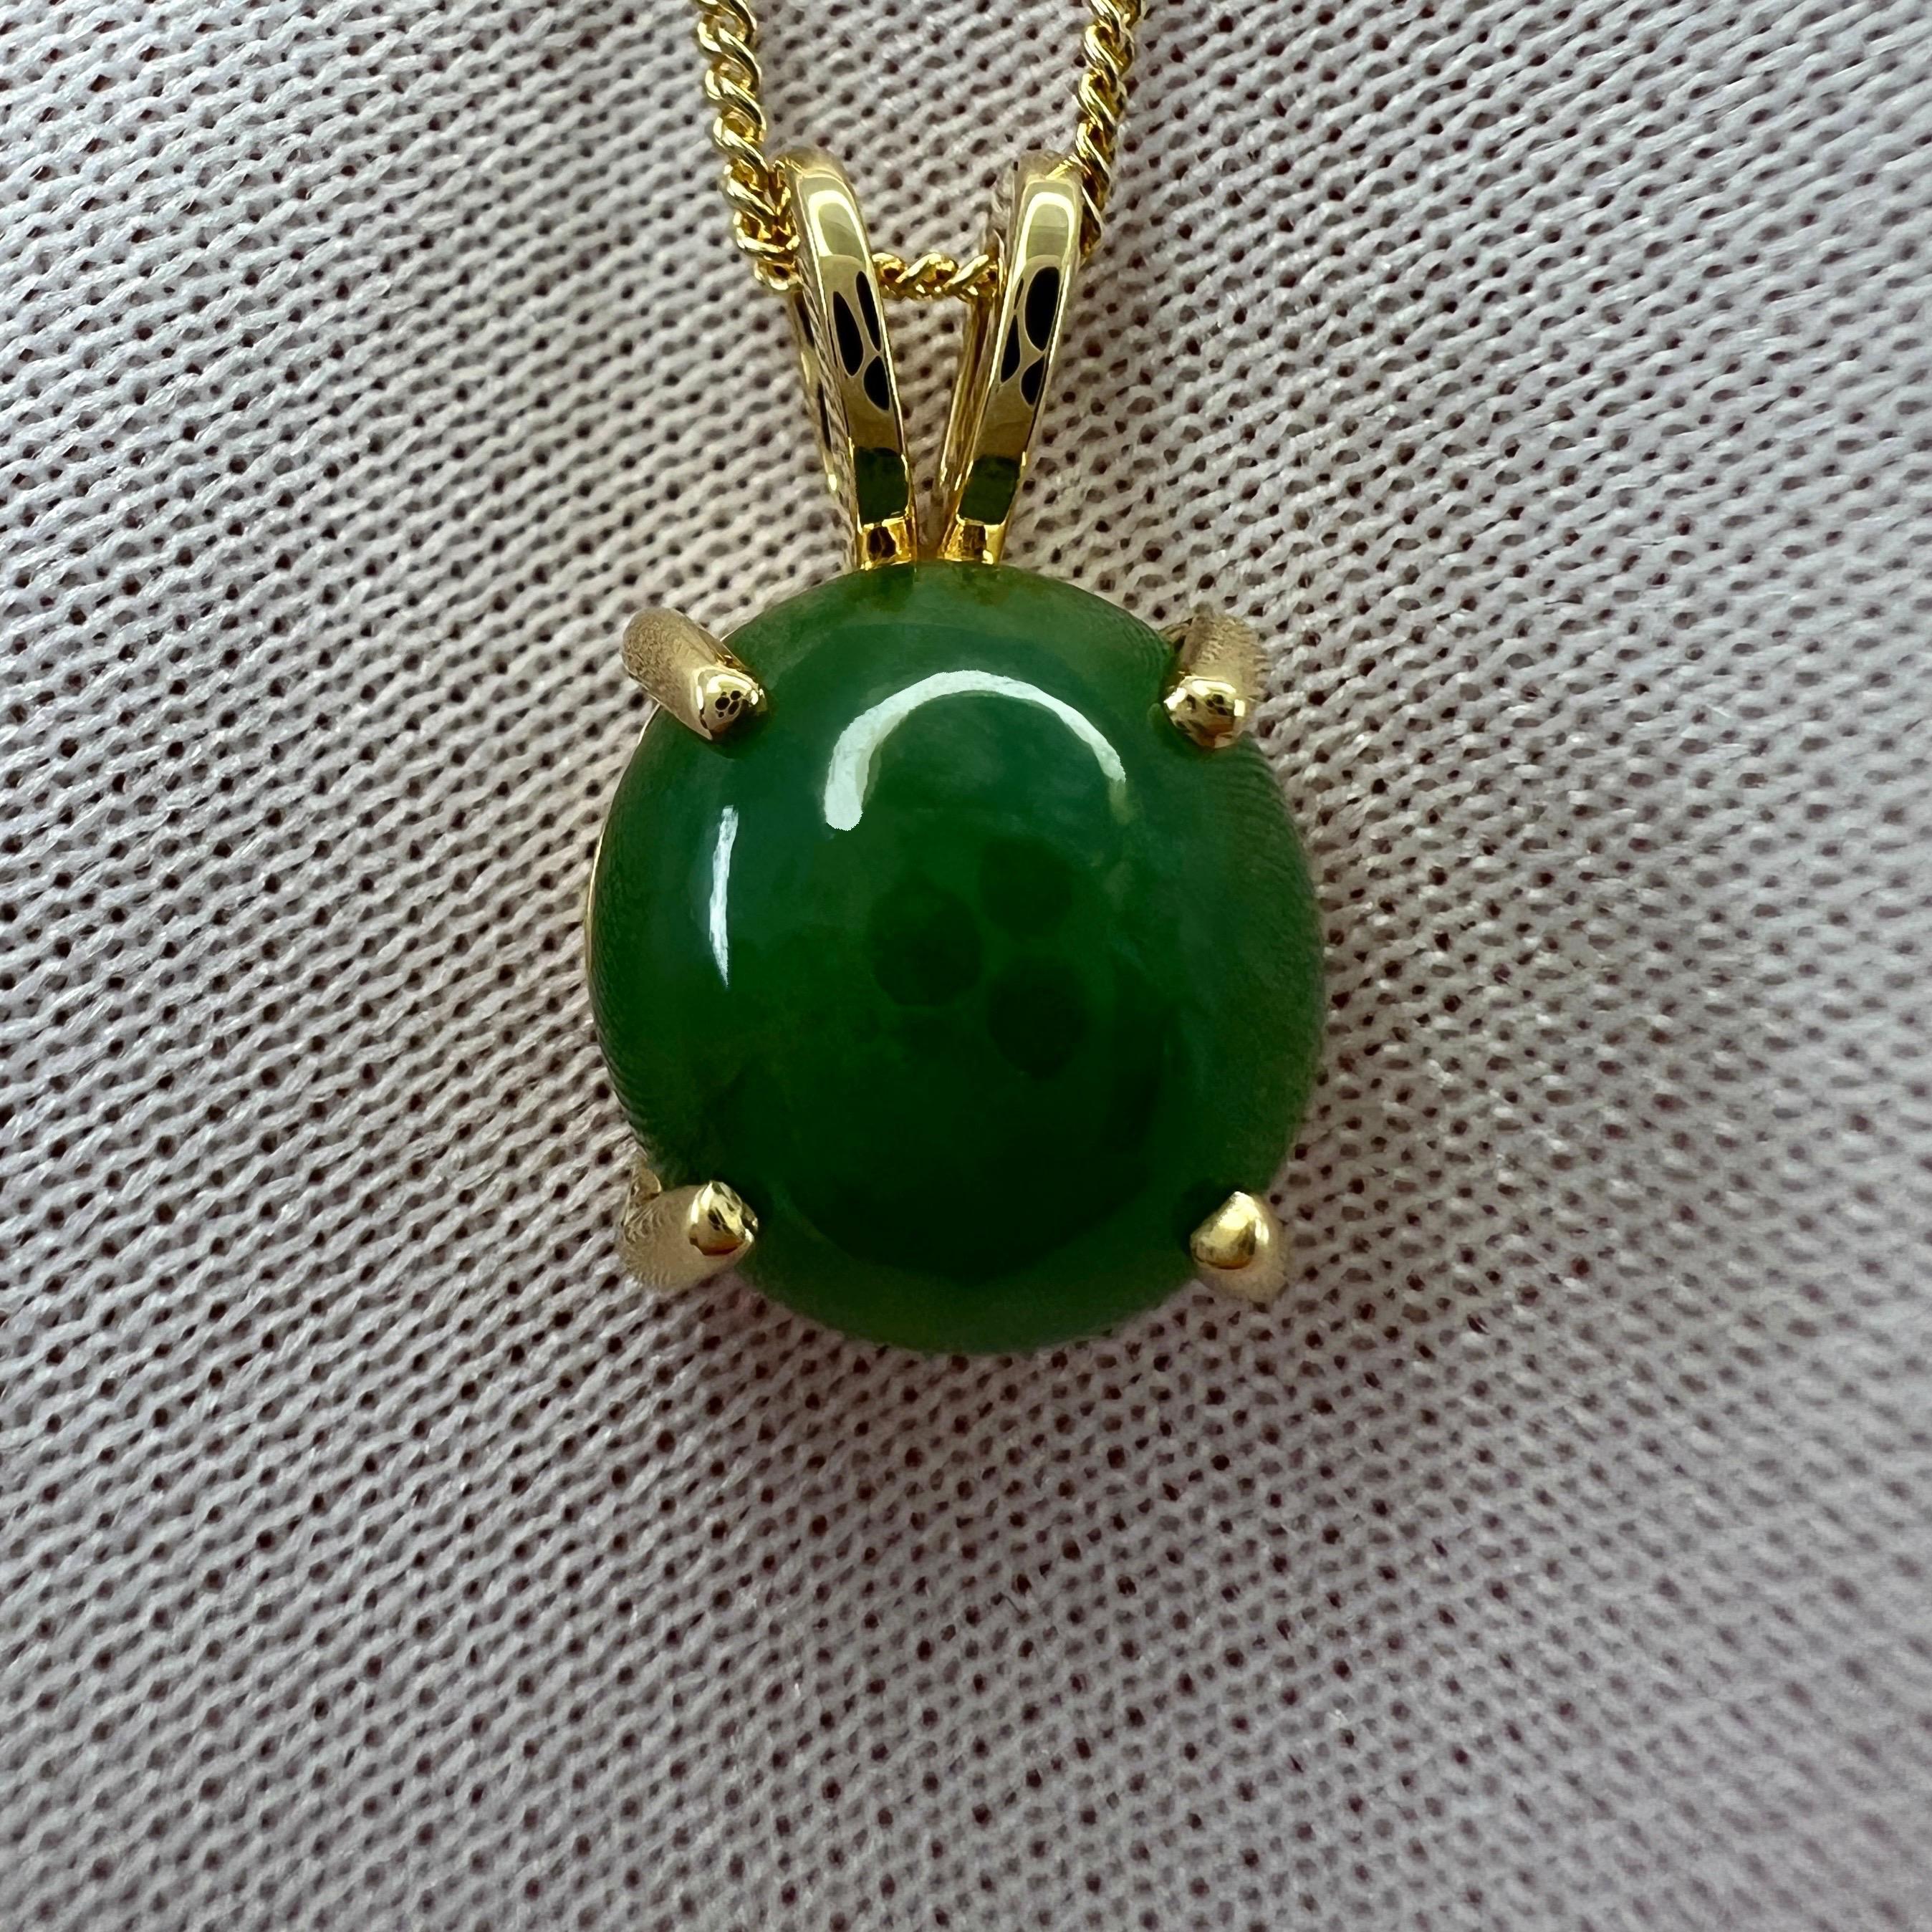 Collier pendentif en or jaune 18 carats en jade naturel certifié IGI de grade A.

Magnifique jade de 3,70 carats d'un vert profond, serti dans un pendentif solitaire en or jaune 18 carats serti de griffes.
La taille ovale du cabochon est excellente